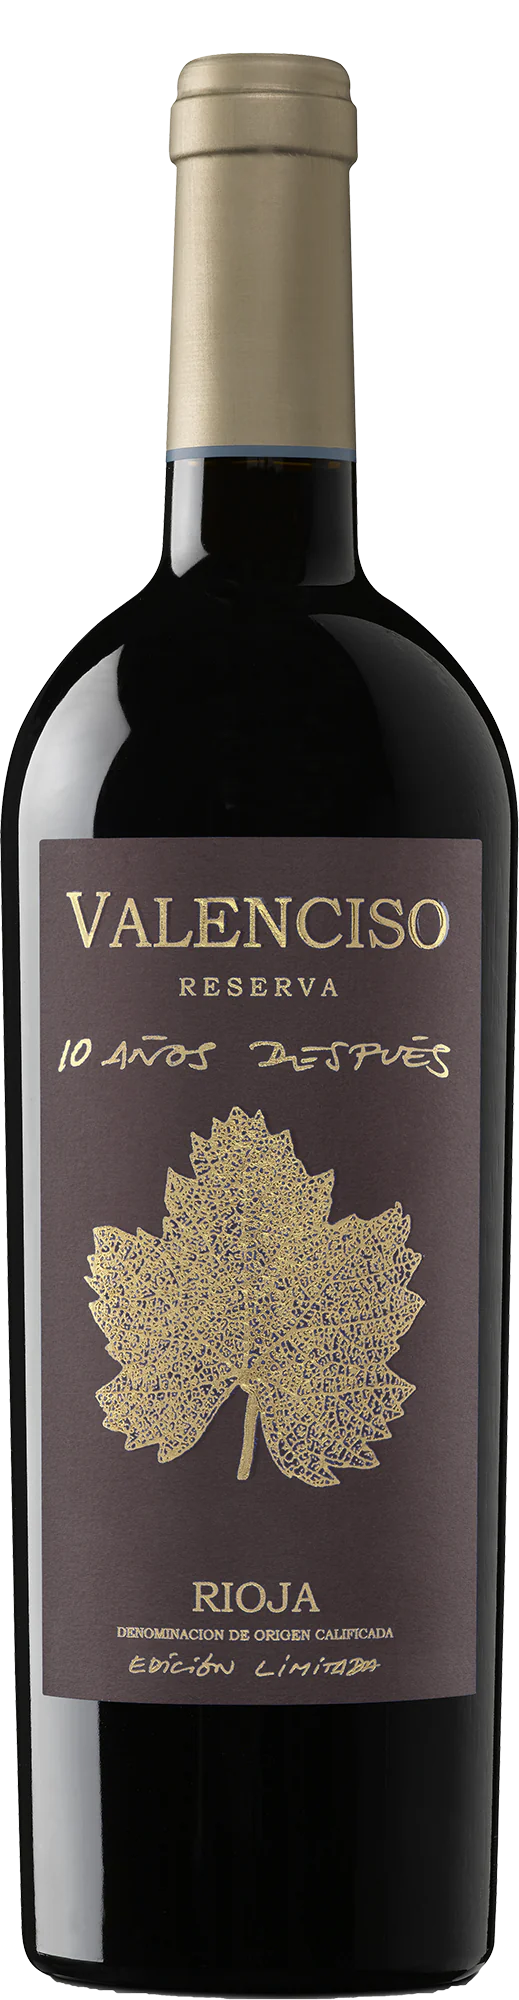 Valenciso Rioja  Reserva '10 Anos Despues'